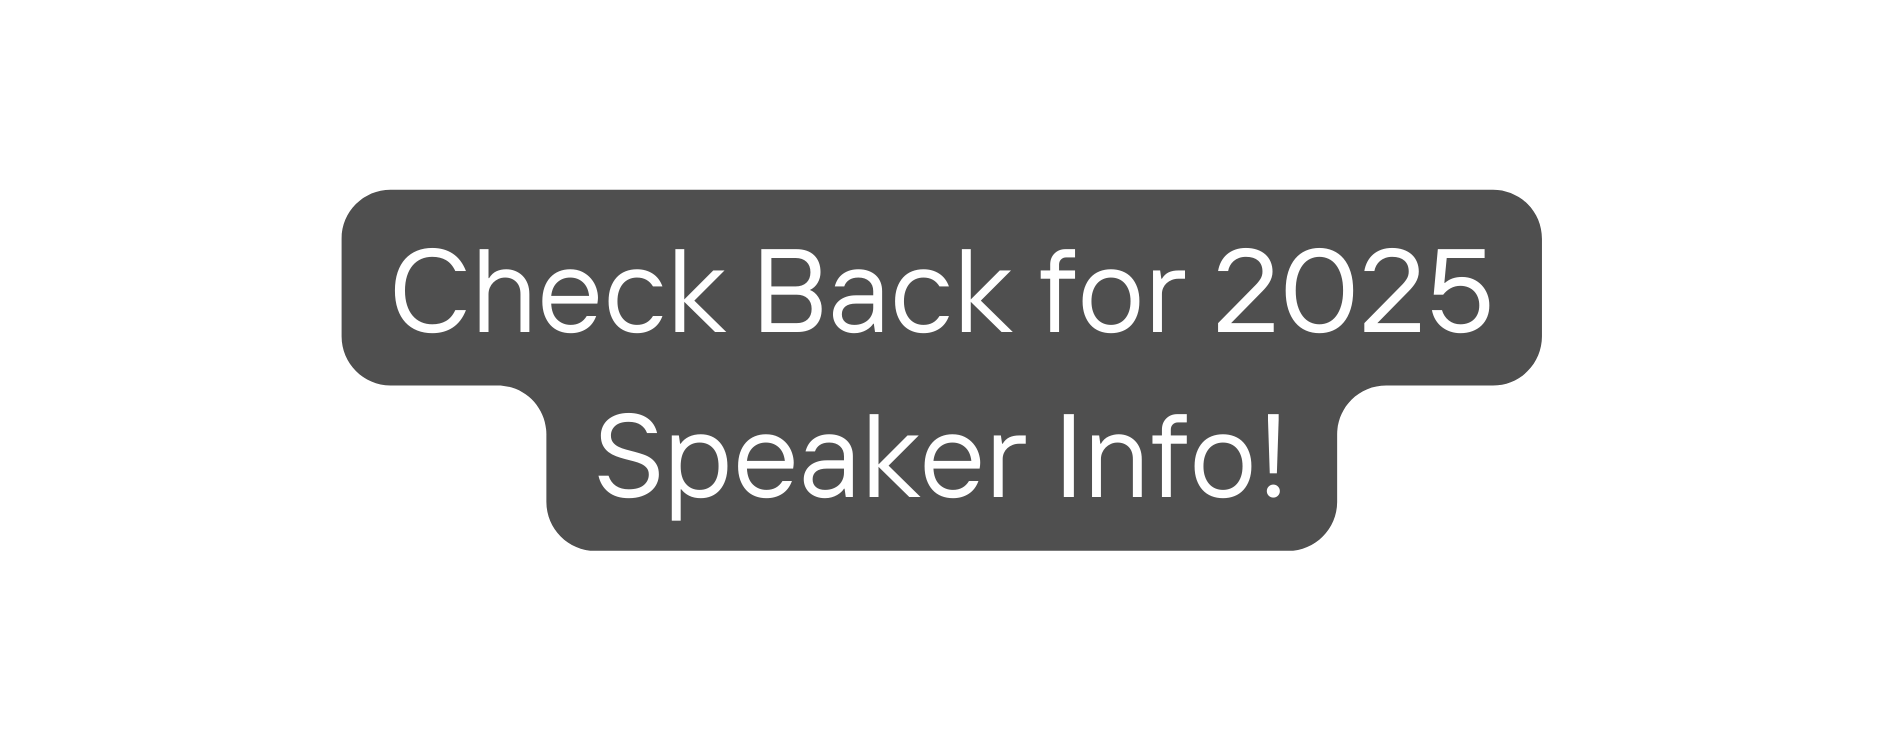 Check Back for 2025 Speaker Info